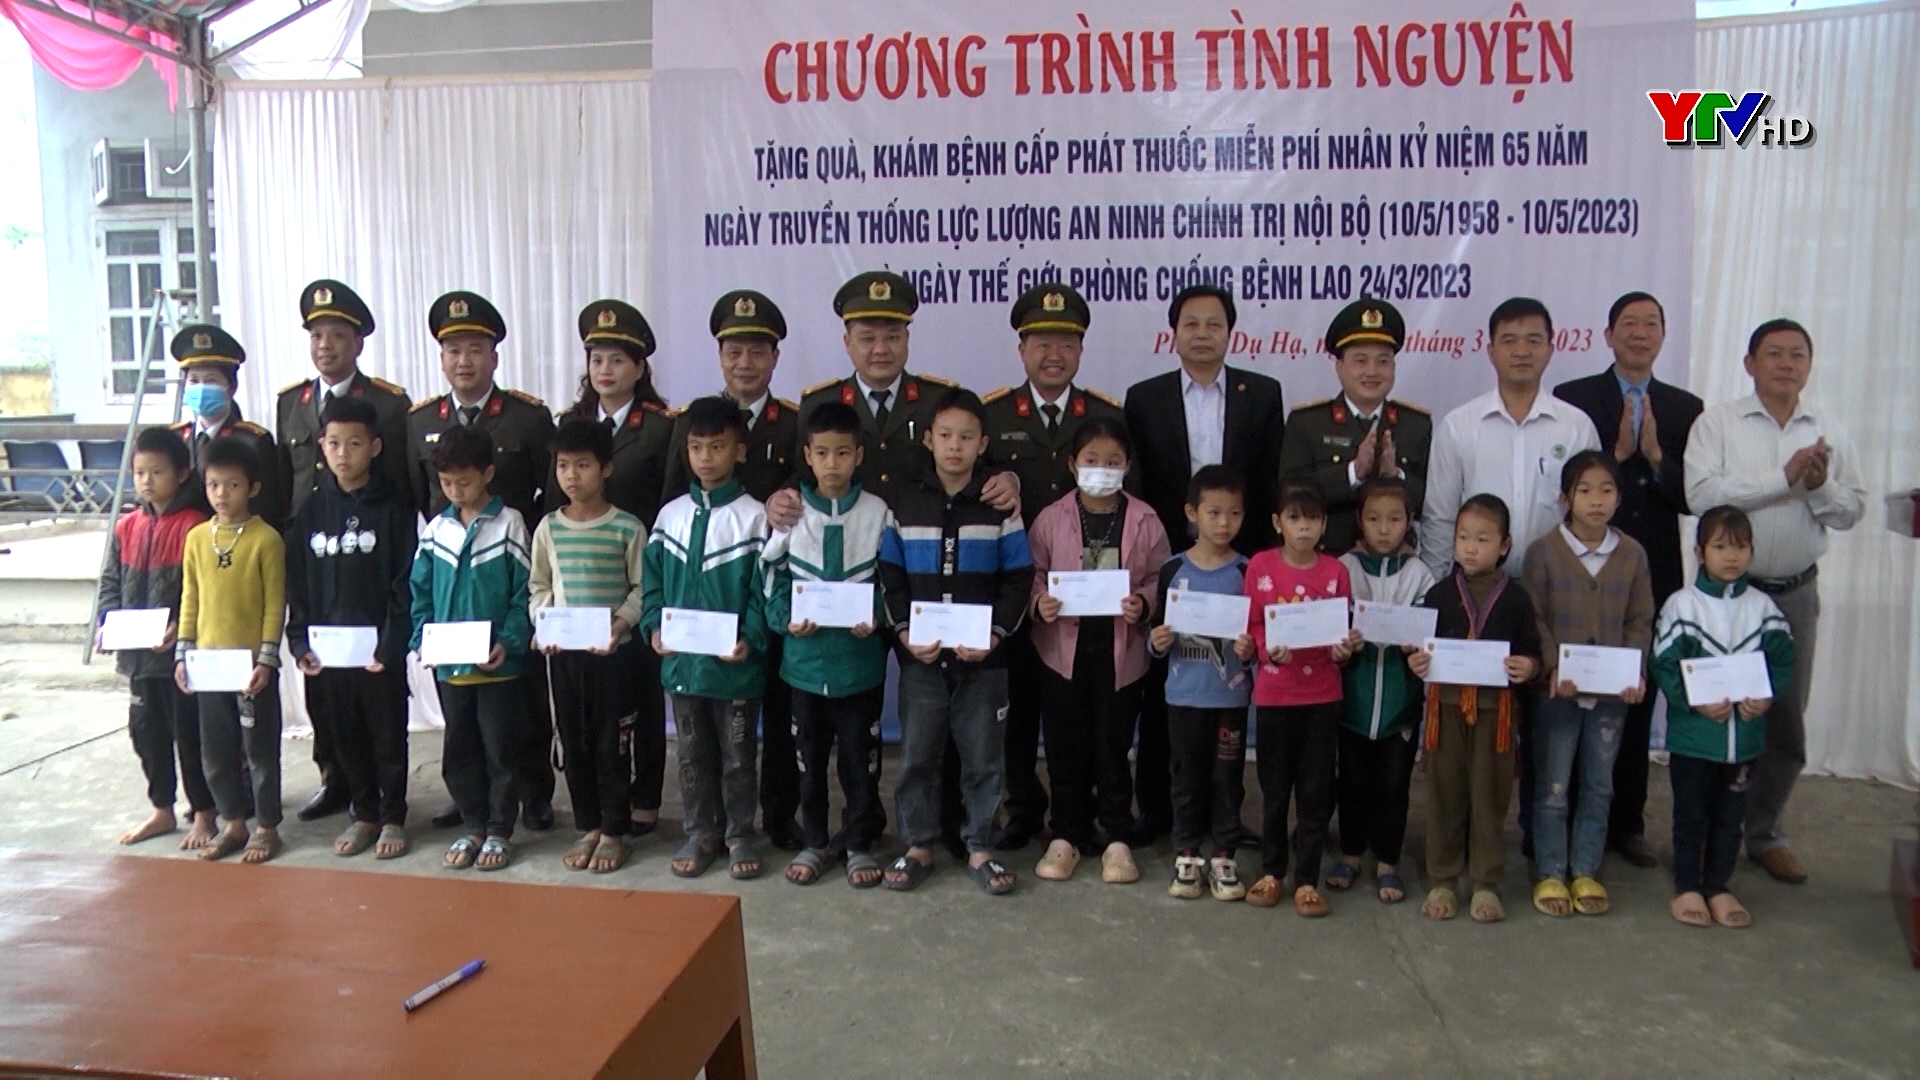 Chương trình tình nguyện cấp, phát thuốc miễn phí tại xã Phong Dụ Hạ, huyện Văn Yên